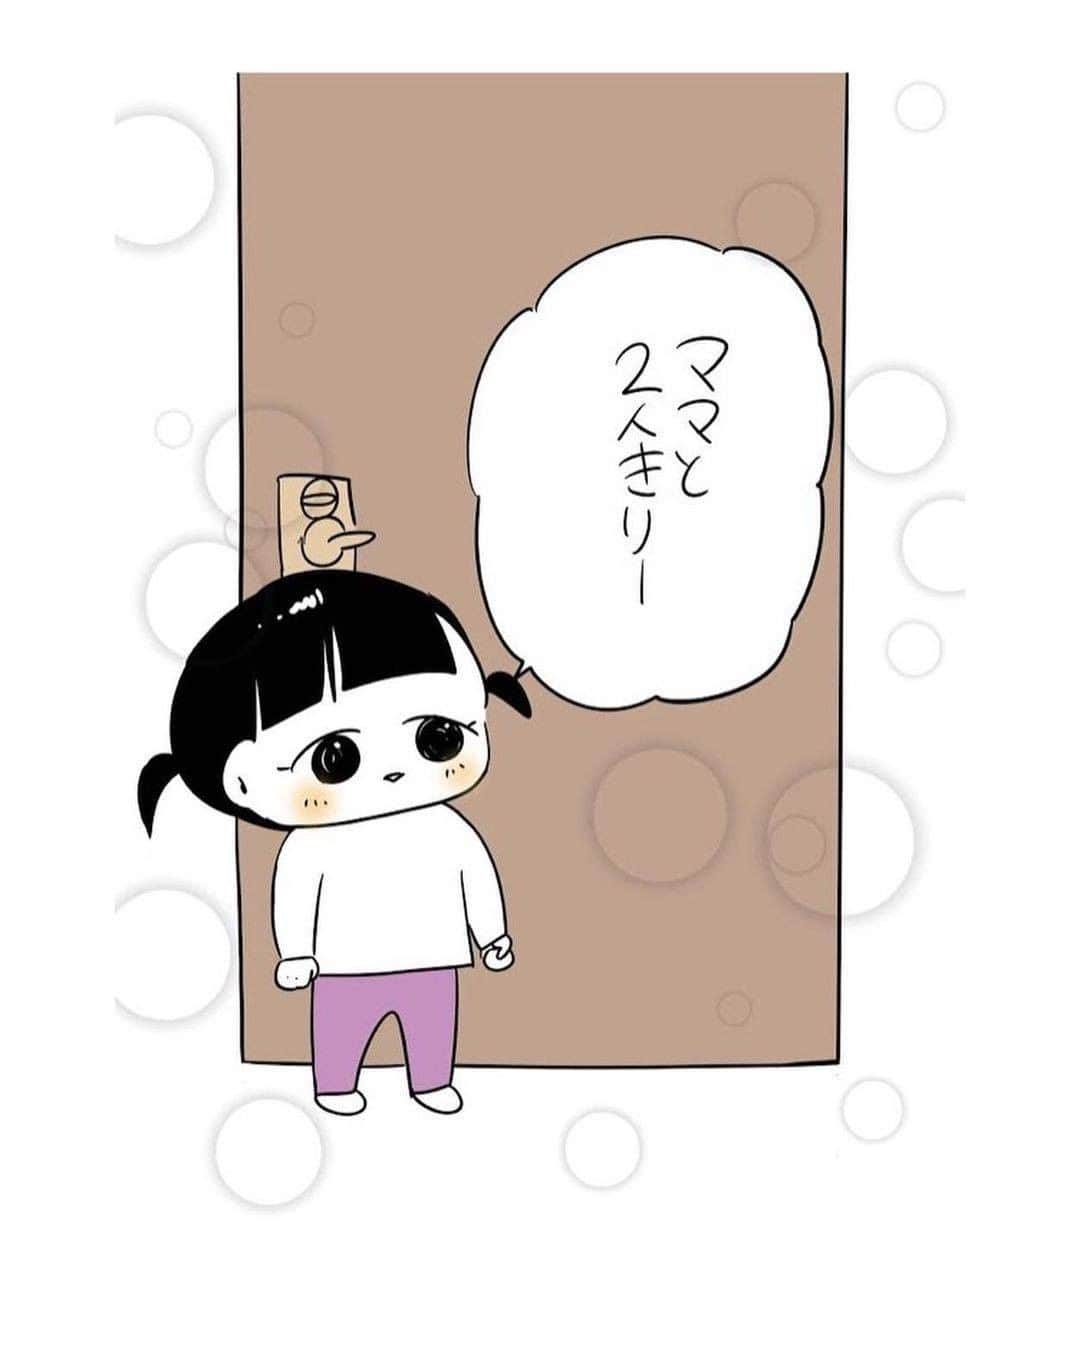 ママリさんのインスタグラム写真 - (ママリInstagram)「大きくなった時のデートが楽しみな母💕 #ママリ #家族を話そう⠀﻿⁠⁠⠀⁠ ⁠.⠀⠀﻿⁠⠀⁠ ＝＝＝⠀⠀⁠ .⁠ いつもトイレまでついてきて鍵を必ず閉める娘。 他の部屋に行った時もやたらドアを閉めるのでママを独り占めしたいのかな？って思うと もうたまらんですね。 . ⁠ ＝＝＝ ⁠ . ⠀﻿⁠⠀⁠ @shirota.yunya さん、素敵な投稿ありがとうございました✨⁠⠀⁠ . ⁠⠀⁠ ⌒⌒⌒⌒⌒⌒⌒⌒⌒⌒⌒⌒⌒⌒⌒⌒*⁣⠀﻿⁠⠀⁠⠀⁠ みんなのおすすめアイテム教えて❤ ​⠀﻿⁠⠀⁠⠀⁠ #ママリ口コミ大賞 ​⁣⠀﻿⁠⠀⁠⠀⁠ ⠀﻿⁠⠀⁠⠀⁠ ⁣新米ママの毎日は初めてのことだらけ！⁣⁣⠀﻿⁠⠀⁠⠀⁠ その1つが、買い物。 ⁣⁣⠀﻿⁠⠀⁠⠀⁠ ⁣⁣⠀﻿⁠⠀⁠⠀⁠ 「家族のために後悔しない選択をしたい…」 ⁣⁣⠀﻿⁠⠀⁠⠀⁠ ⁣⁣⠀﻿⁠⠀⁠⠀⁠ そんなママさんのために、⁣⁣⠀﻿⁠⠀⁠⠀⁠ ＼子育てで役立った！／ ⁣⁣⠀﻿⁠⠀⁠⠀⁠ ⁣⁣⠀﻿⁠⠀⁠⠀⁠ あなたのおすすめグッズ教えてください🙏 ​ ​ ⁣⁣⠀﻿⁠⠀⁠⠀⁠ ⠀﻿⁠⠀⁠⠀⁠ 【応募方法】⠀﻿⁠⠀⁠⠀⁠ #ママリ口コミ大賞 をつけて、⠀﻿⁠⠀⁠⠀⁠ アイテム・サービスの口コミを投稿するだけ✨⠀﻿⁠⠀⁠⠀⁠ ⁣⁣⠀﻿⁠⠀⁠⠀⁠ (例)⠀﻿⁠⠀⁠⠀⁠ 「このママバッグは神だった」⁣⁣⠀﻿⁠⠀⁠⠀⁠ 「これで寝かしつけ助かった！」⠀﻿⁠⠀⁠⠀⁠ ⠀﻿⁠⠀⁠⠀⁠ あなたのおすすめ、お待ちしてます ​⠀﻿⁠⠀⁠⠀⁠ ⁣⠀⠀﻿⁠⠀⁠⠀⁠ * ⌒⌒⌒⌒⌒⌒⌒⌒⌒⌒⌒⌒⌒⌒⌒⌒*⁣⠀⠀⠀⁣⠀⠀﻿⁠⠀⁠⠀⁠ ⁣💫先輩ママに聞きたいことありませんか？💫⠀⠀⠀⠀⁣⠀⠀﻿⁠⠀⁠⠀⁠ .⠀⠀⠀⠀⠀⠀⁣⠀⠀﻿⁠⠀⁠⠀⁠ 「悪阻っていつまでつづくの？」⠀⠀⠀⠀⠀⠀⠀⁣⠀⠀﻿⁠⠀⁠⠀⁠ 「妊娠から出産までにかかる費用は？」⠀⠀⠀⠀⠀⠀⠀⁣⠀⠀﻿⁠⠀⁠⠀⁠ 「陣痛・出産エピソードを教えてほしい！」⠀⠀⠀⠀⠀⠀⠀⁣⠀⠀﻿⁠⠀⁠⠀⁠ .⠀⠀⠀⠀⠀⠀⁣⠀⠀﻿⁠⠀⁠⠀⁠ あなたの回答が、誰かの支えになる。⠀⠀⠀⠀⠀⠀⠀⁣⠀⠀﻿⁠⠀⁠⠀⁠ .⠀⠀⠀⠀⠀⠀⁣⠀⠀﻿⁠⠀⠀⠀⠀⠀⠀⠀⠀⠀⠀⠀⠀⁠⠀⁠⠀⁠ 👶🏻　💐　👶🏻　💐　👶🏻 💐　👶🏻 💐﻿⁠ #育児日記 #育児漫画 #子育て #育児絵日記 #育児イラスト #子育て日記 #成長記録  #子育て漫画 #子育て記録 #子育て絵日記 #子育てあるある #育児あるある #ママあるある #赤ちゃんあるある #新生児#0歳 #1歳 #2歳 #3歳 #産後 #女の子ママ#男の子ママ #トイレ#鍵#娘好き#結婚」12月21日 12時03分 - mamari_official